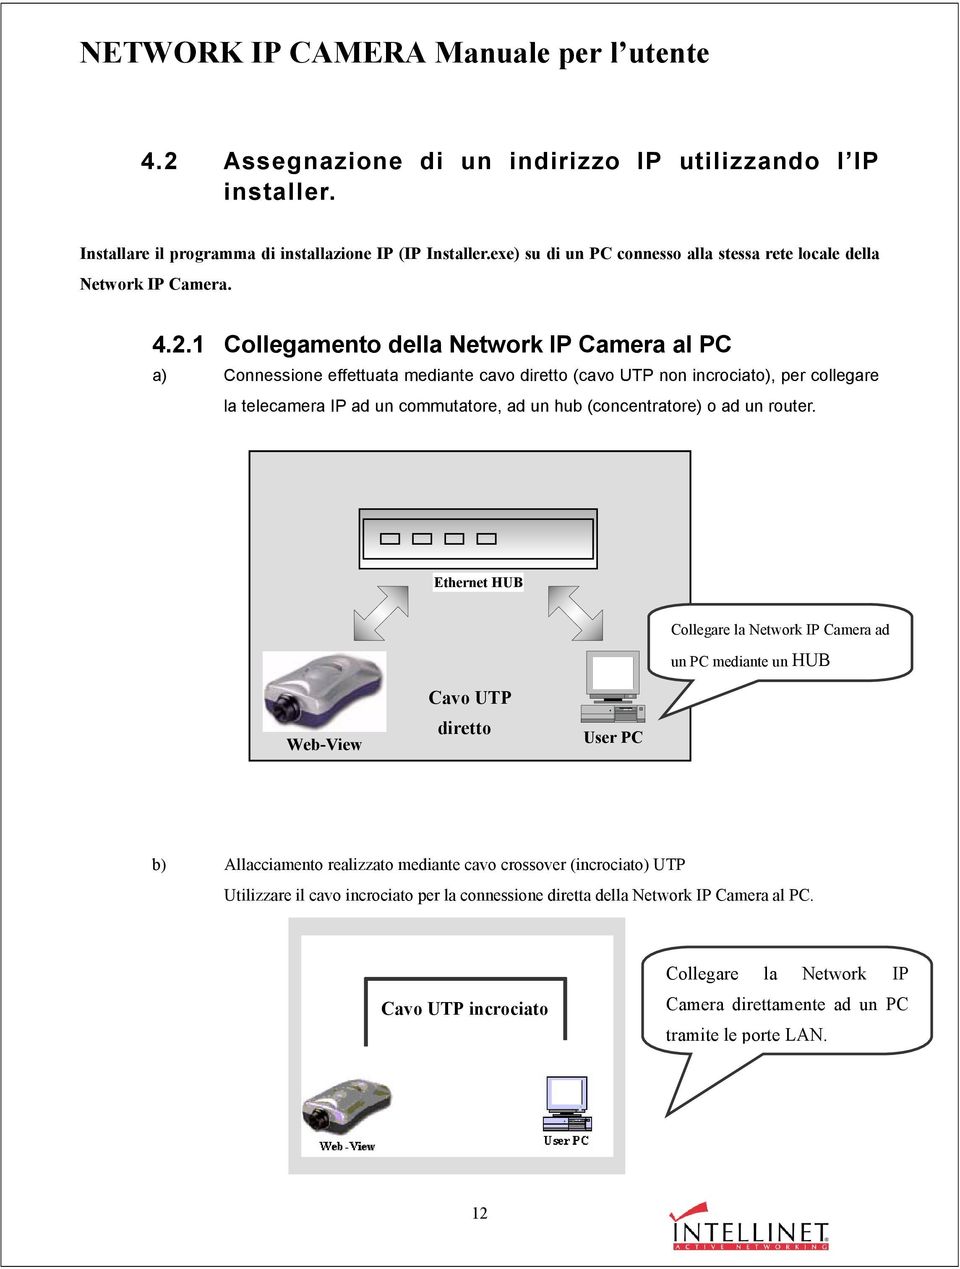 1 Collegamento della Network IP Camera al PC a) Connessione effettuata mediante cavo diretto (cavo UTP non incrociato), per collegare la telecamera IP ad un commutatore, ad un hub